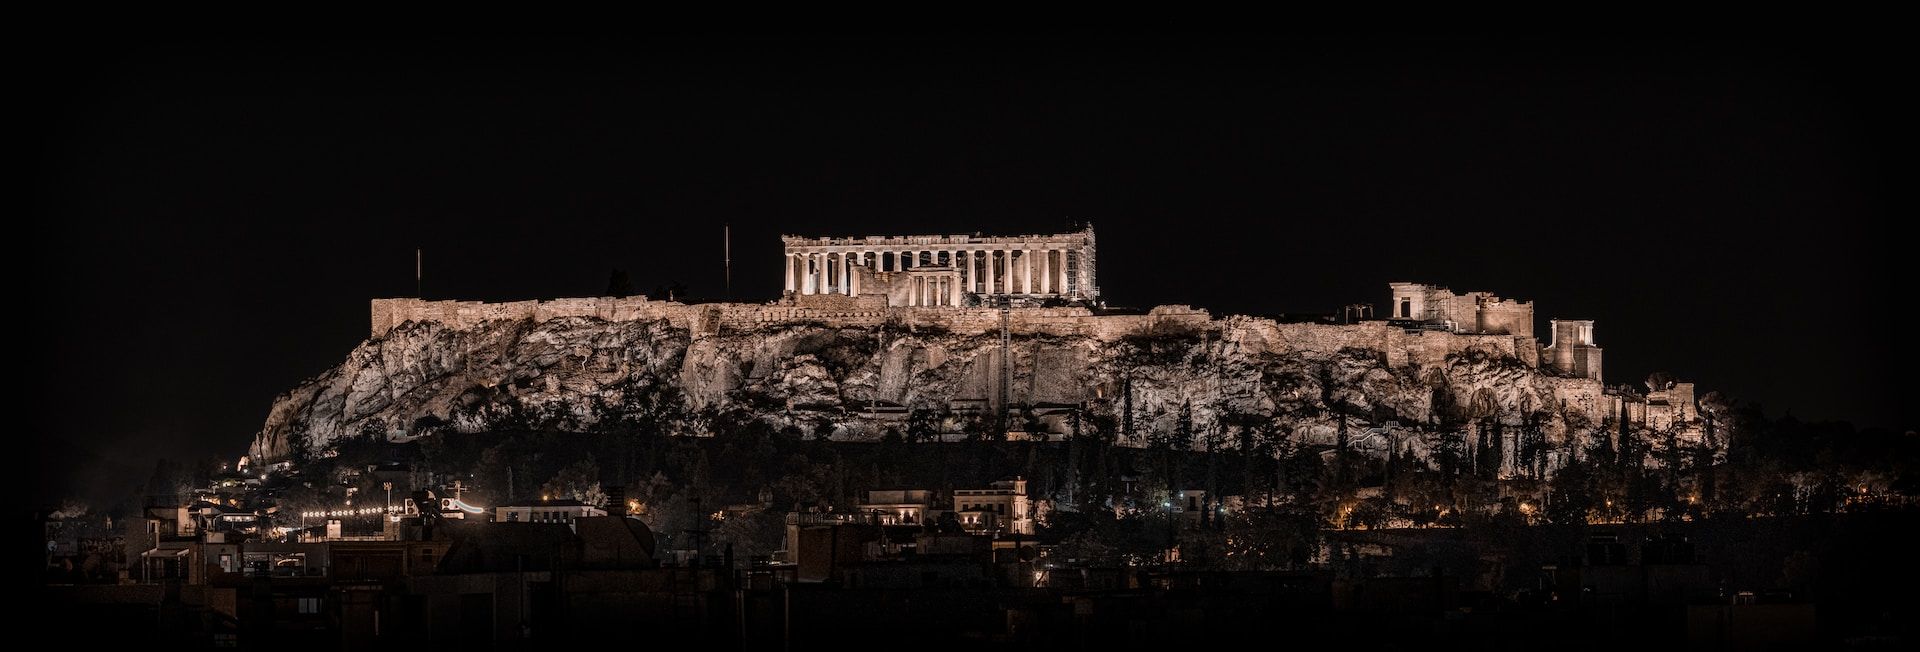 Ο Παρθενώνας στην Αθήνα τη νύχτα, Ελλάδα